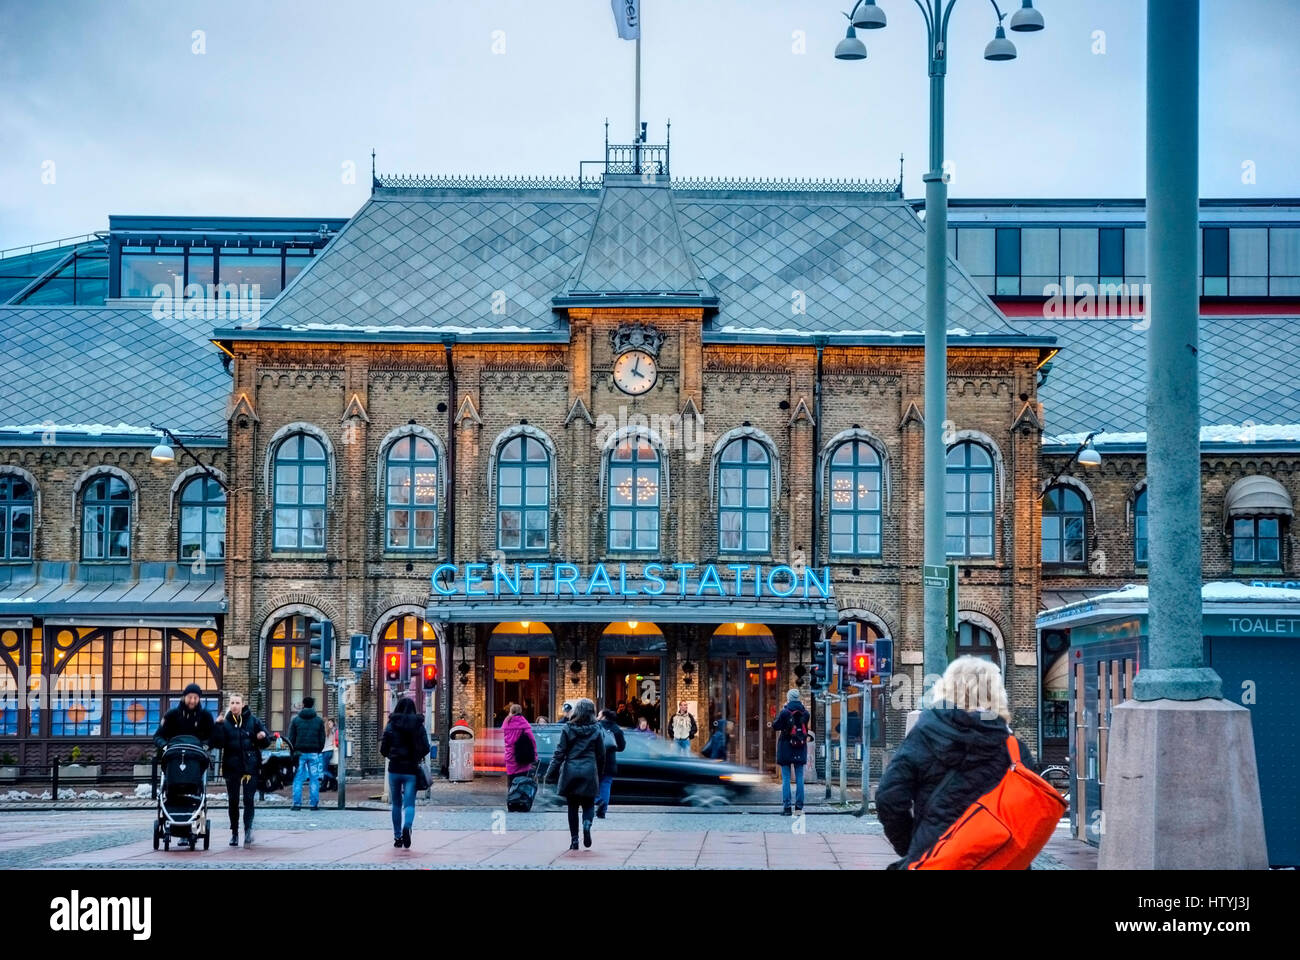 Göteborg, Svezia - 1 febbraio: gente correre per il Göteborg principale stazione ferroviaria nel crepuscolo della sera il 1 febbraio 2015 Foto Stock